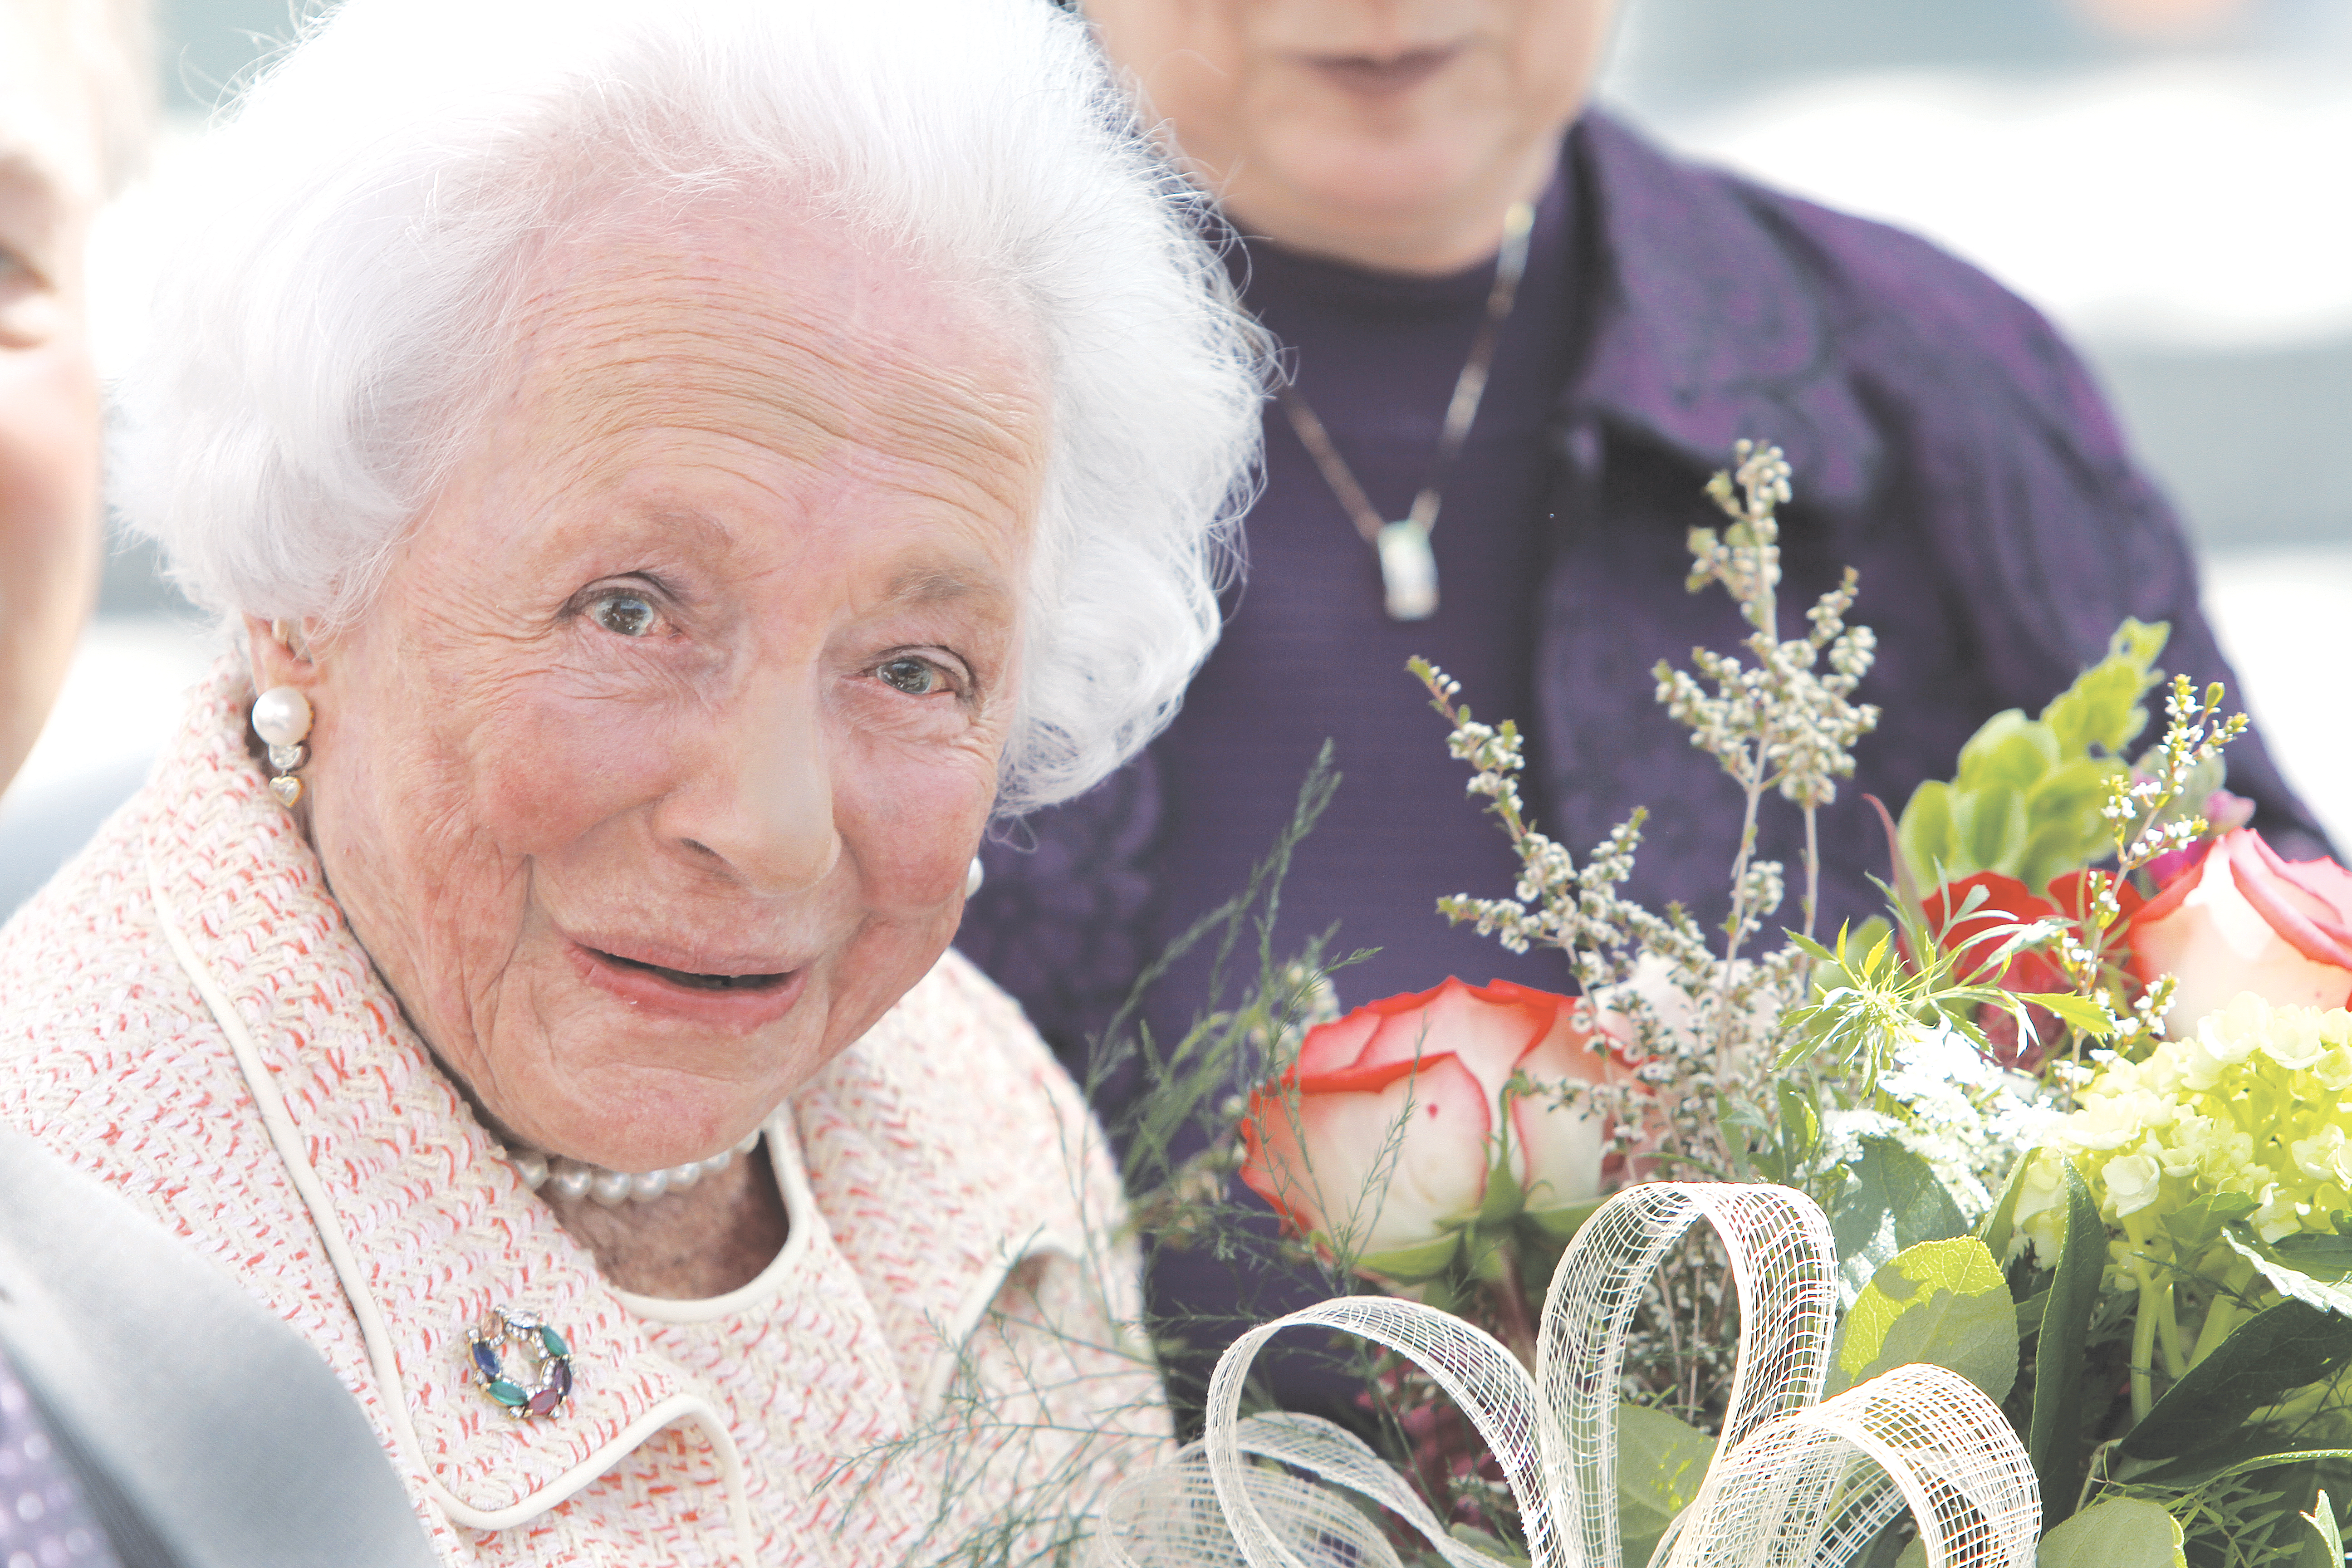 UTD benefactor Margaret McDermott passes away at 106